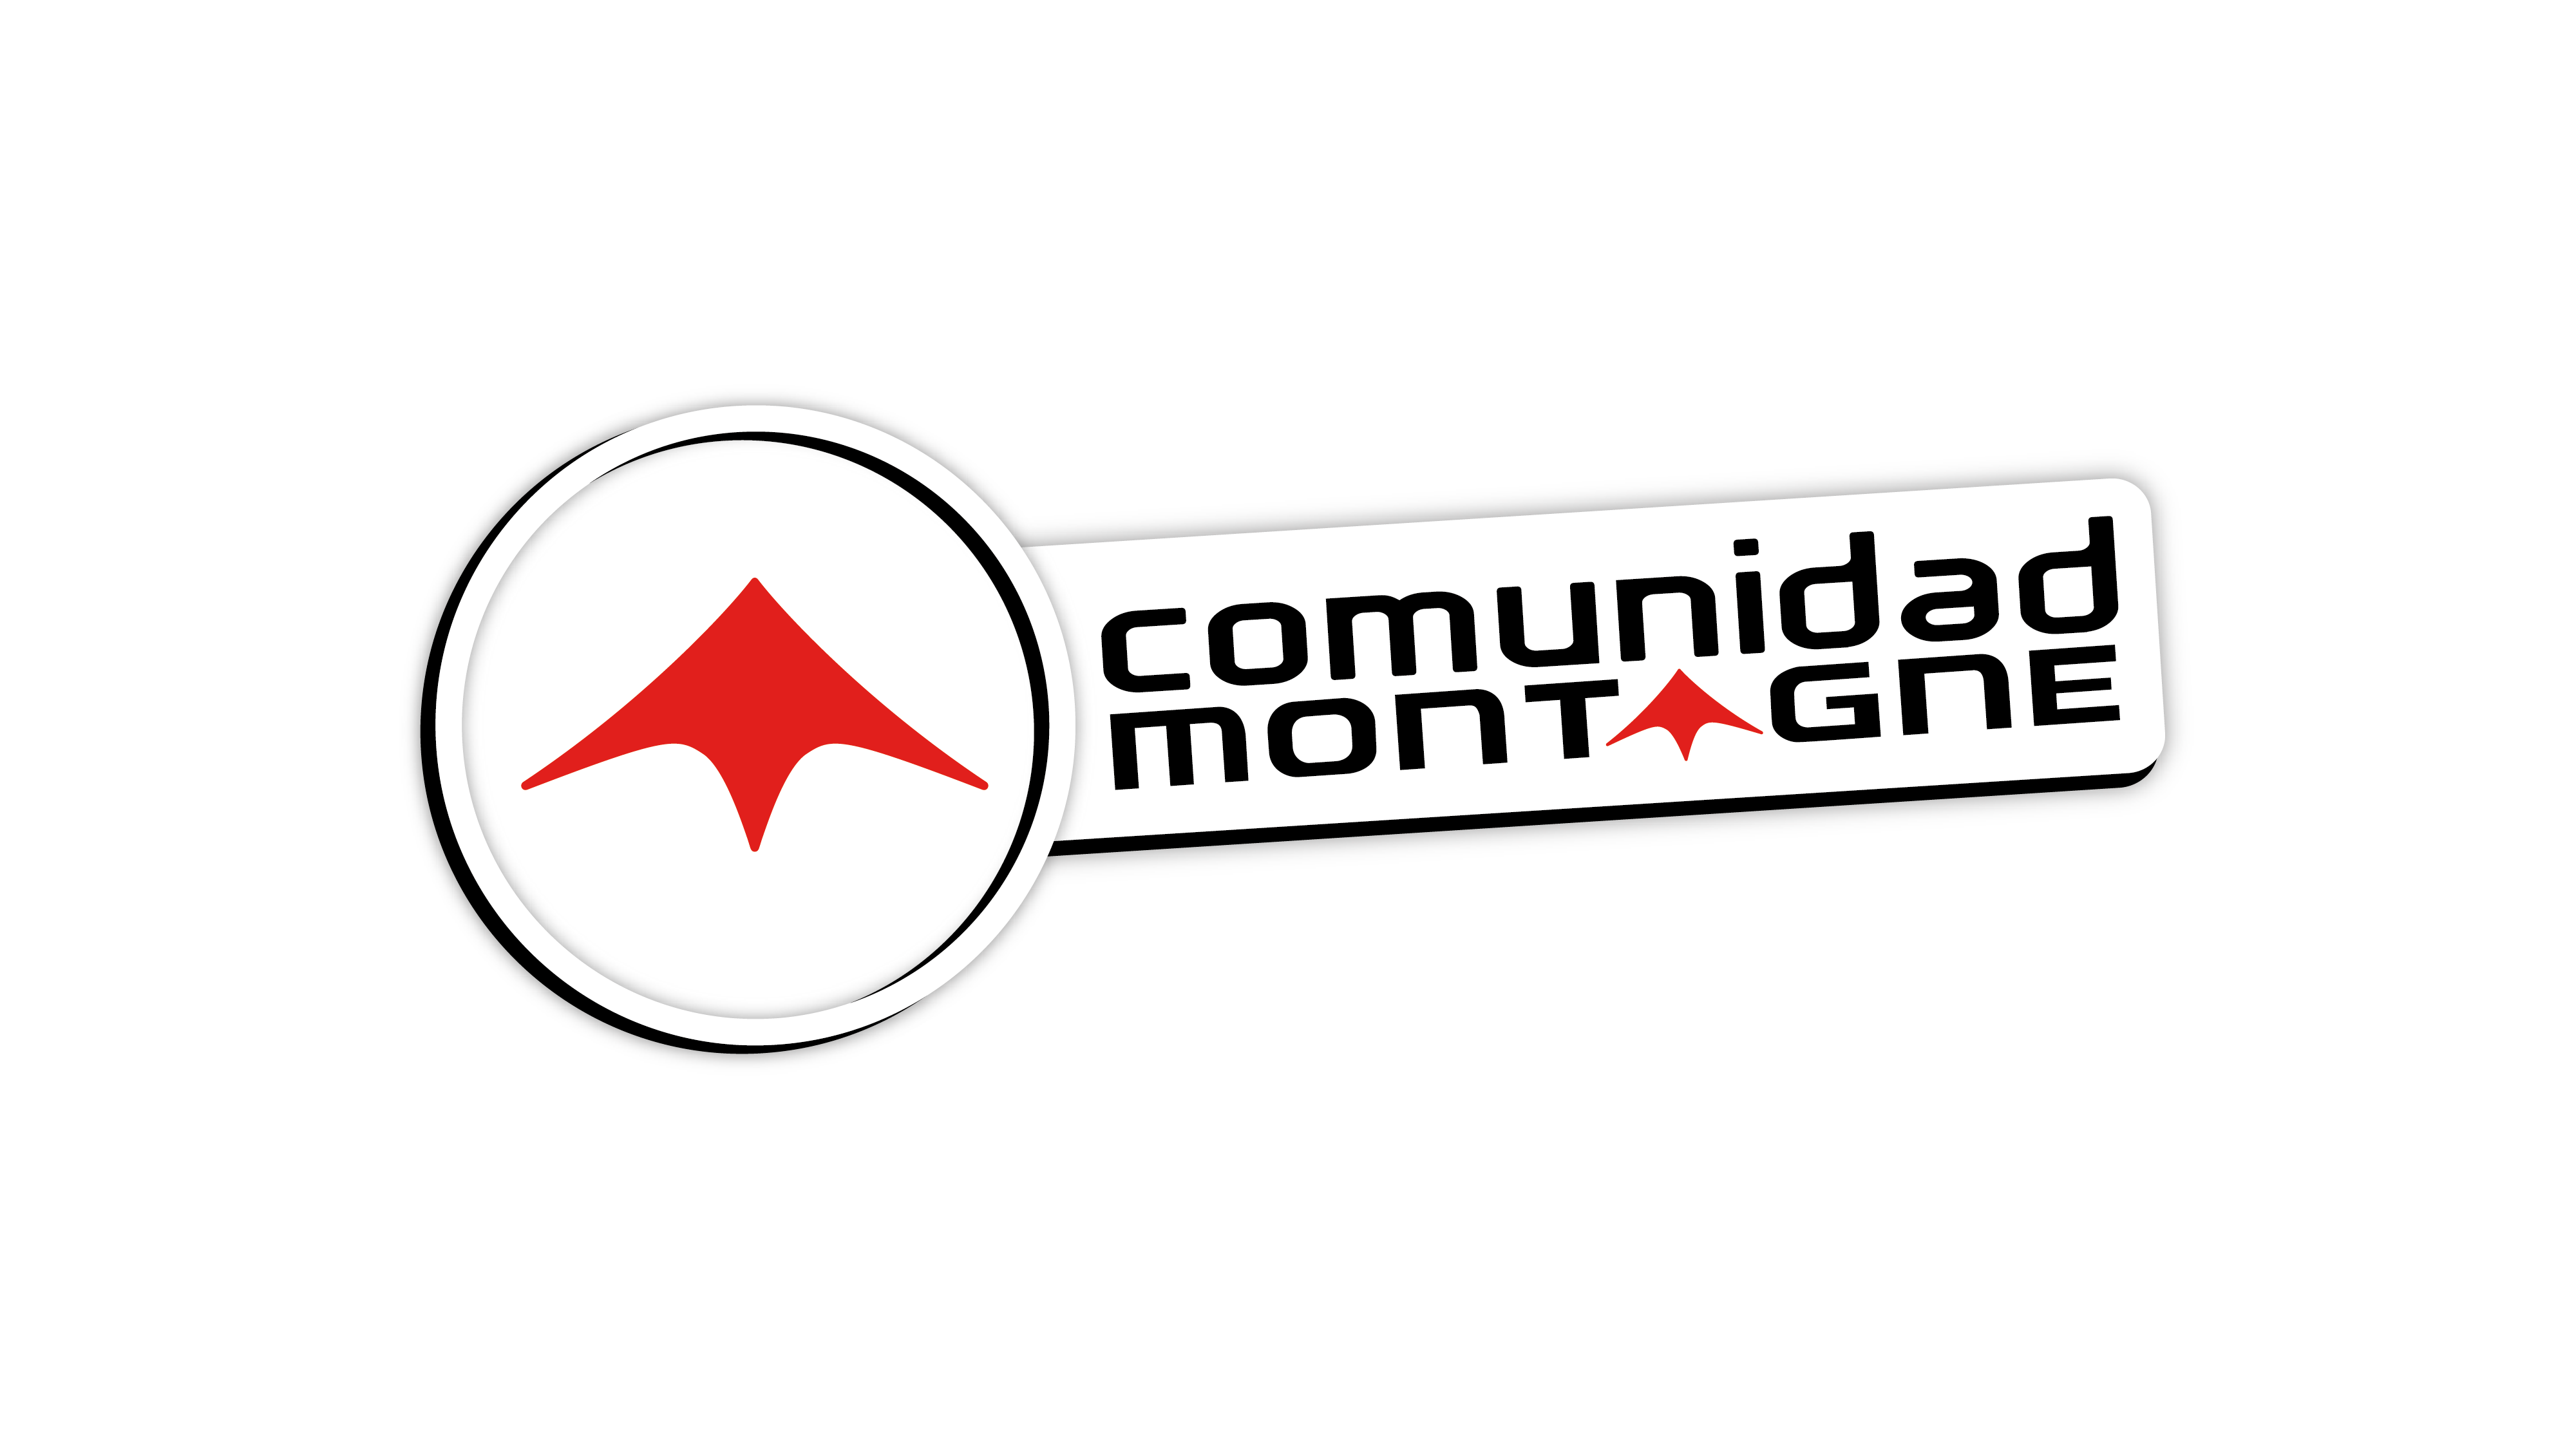 Logotipo Promo Comunidad Montagne (Locales)	